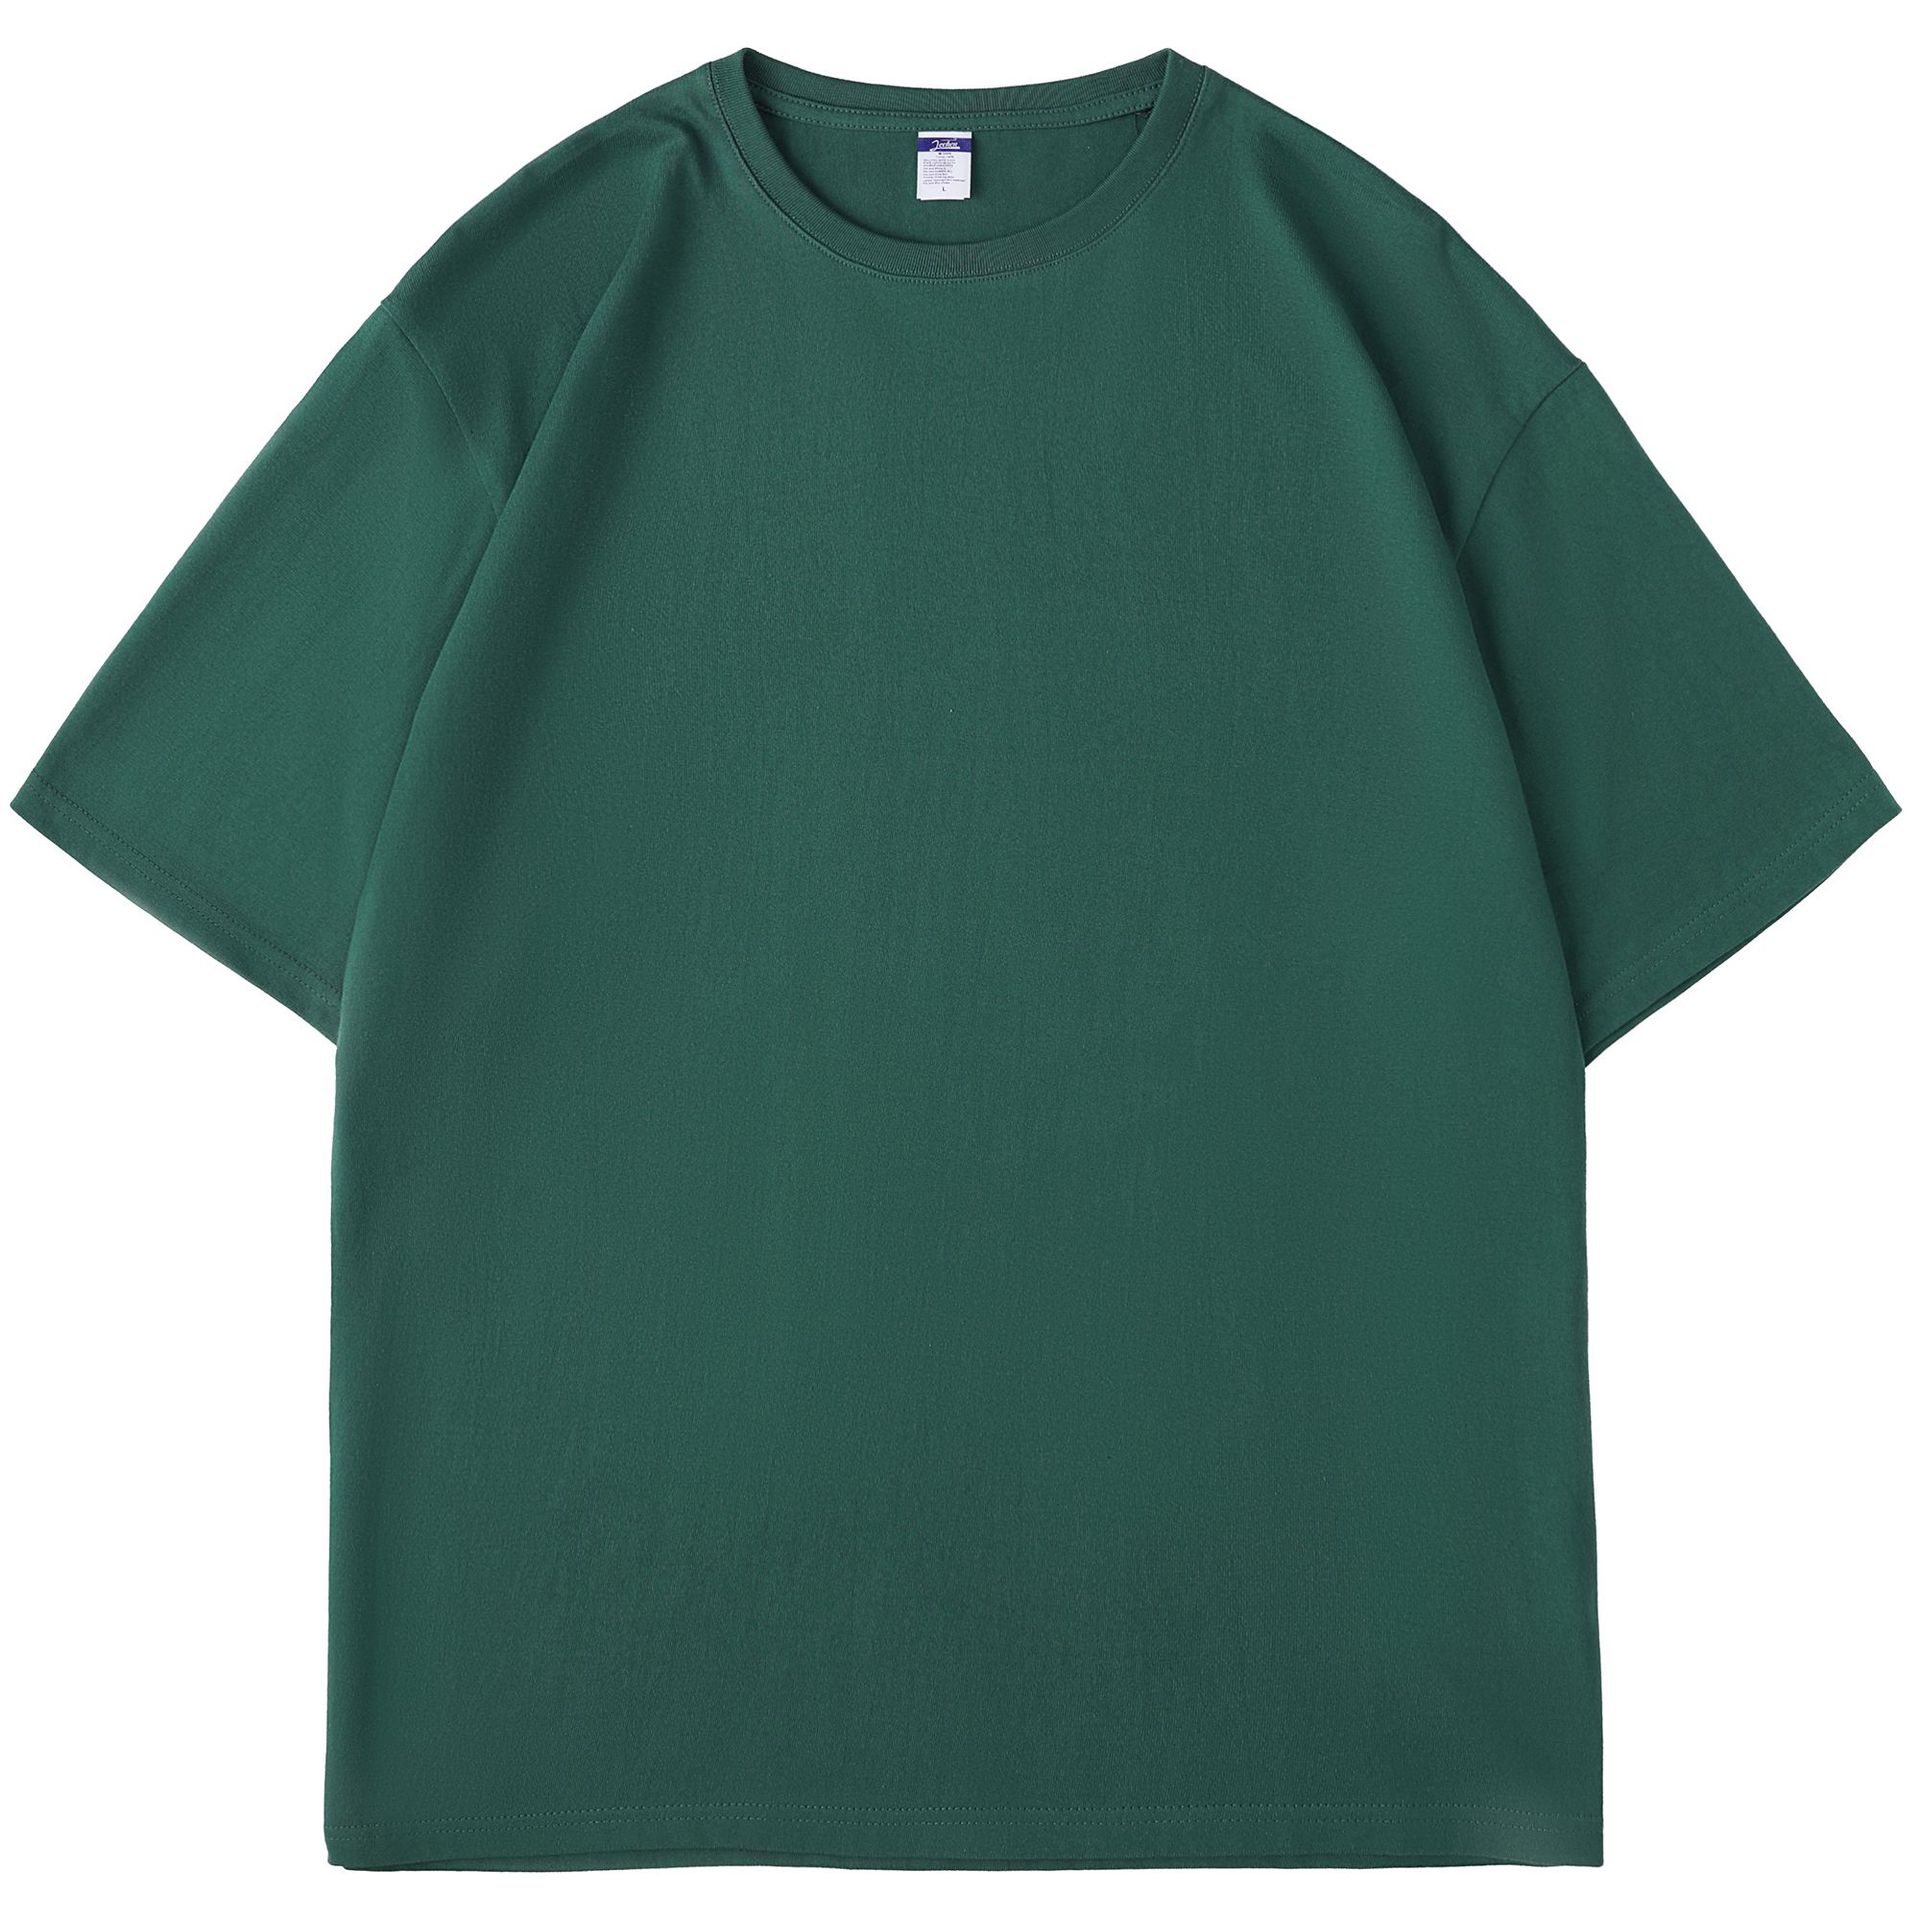 Coton 100% plus taille rond cou rond t-shirt féminin à manches courtes 4TZ